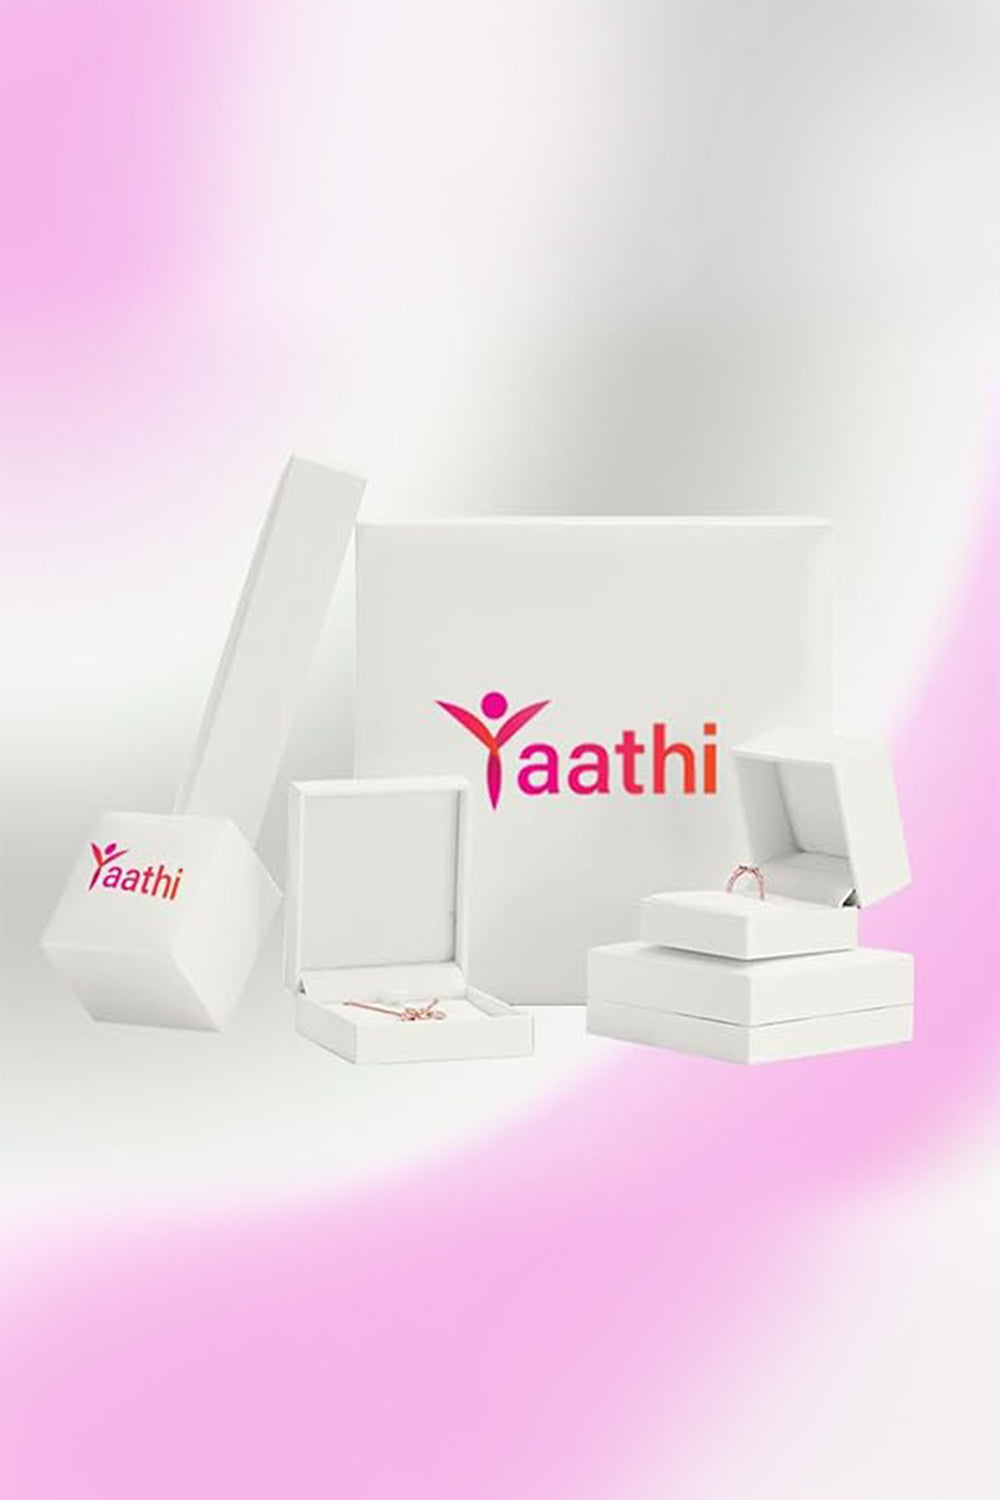 Yaathi Latest Trinity Stud Earrings Online, Ear Studs for Women